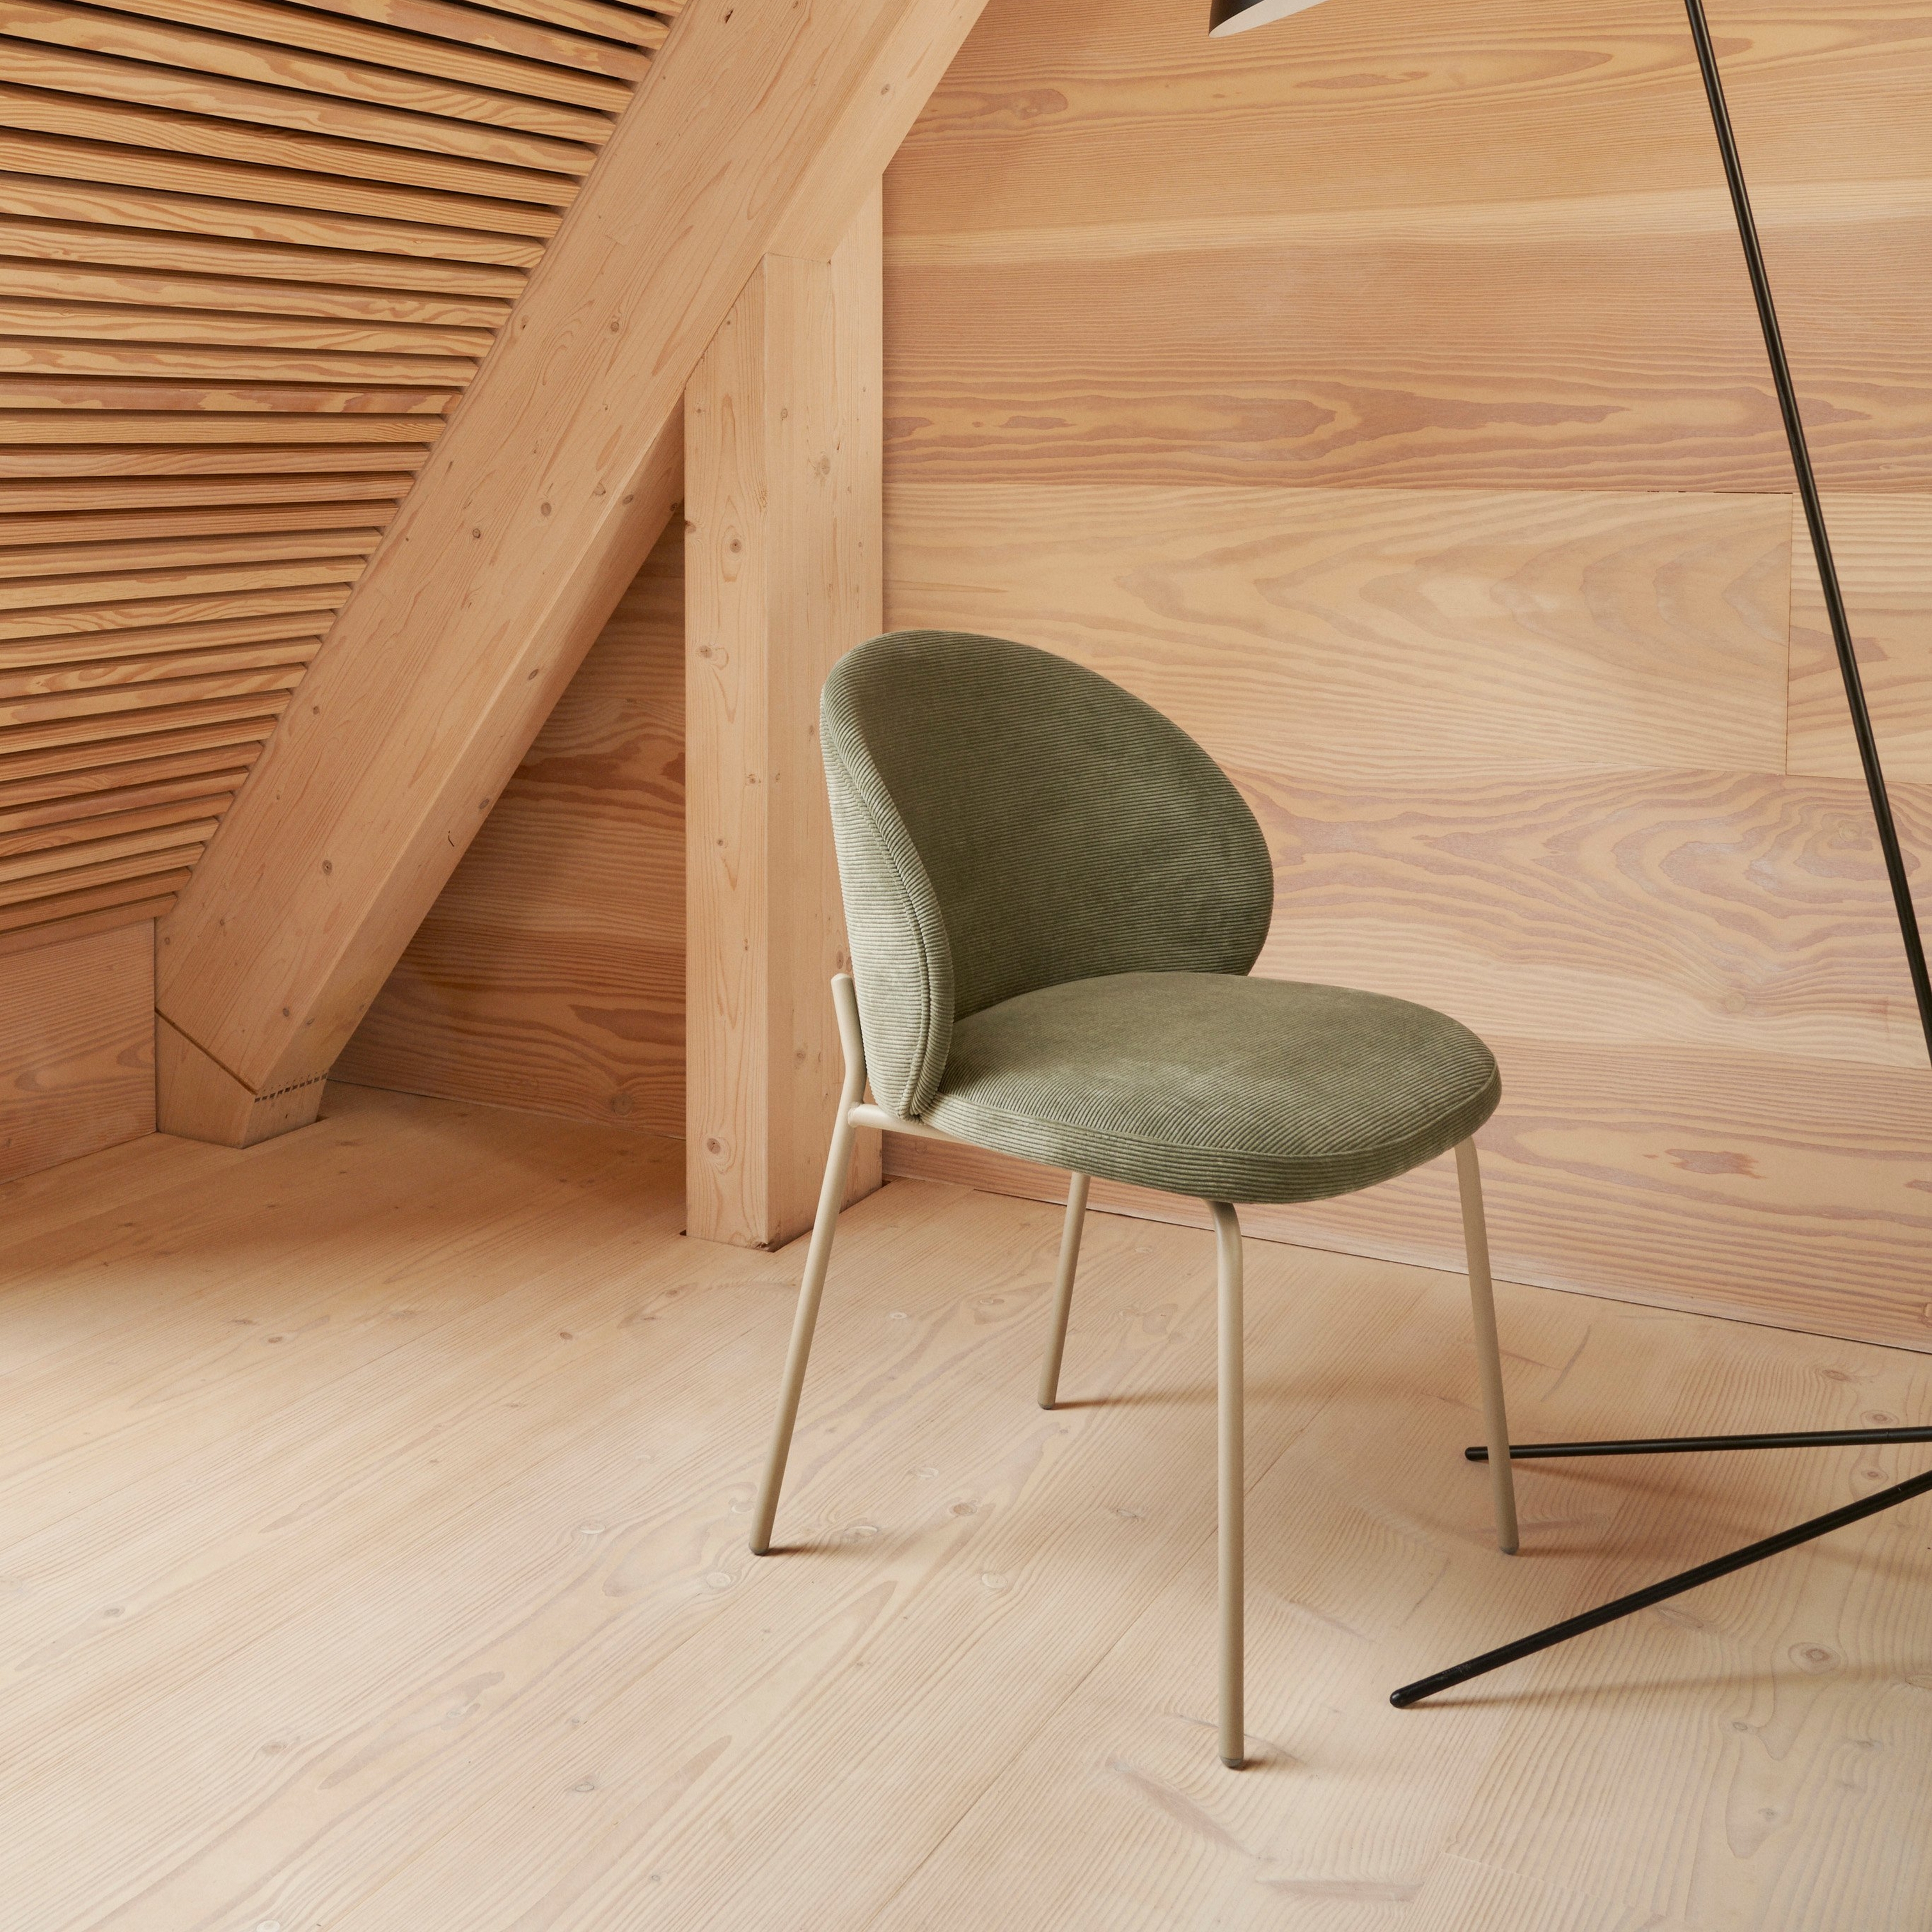 De Princeton stoel bekleed met groene Bresso stof in een hoek met de Demand vloerlamp.